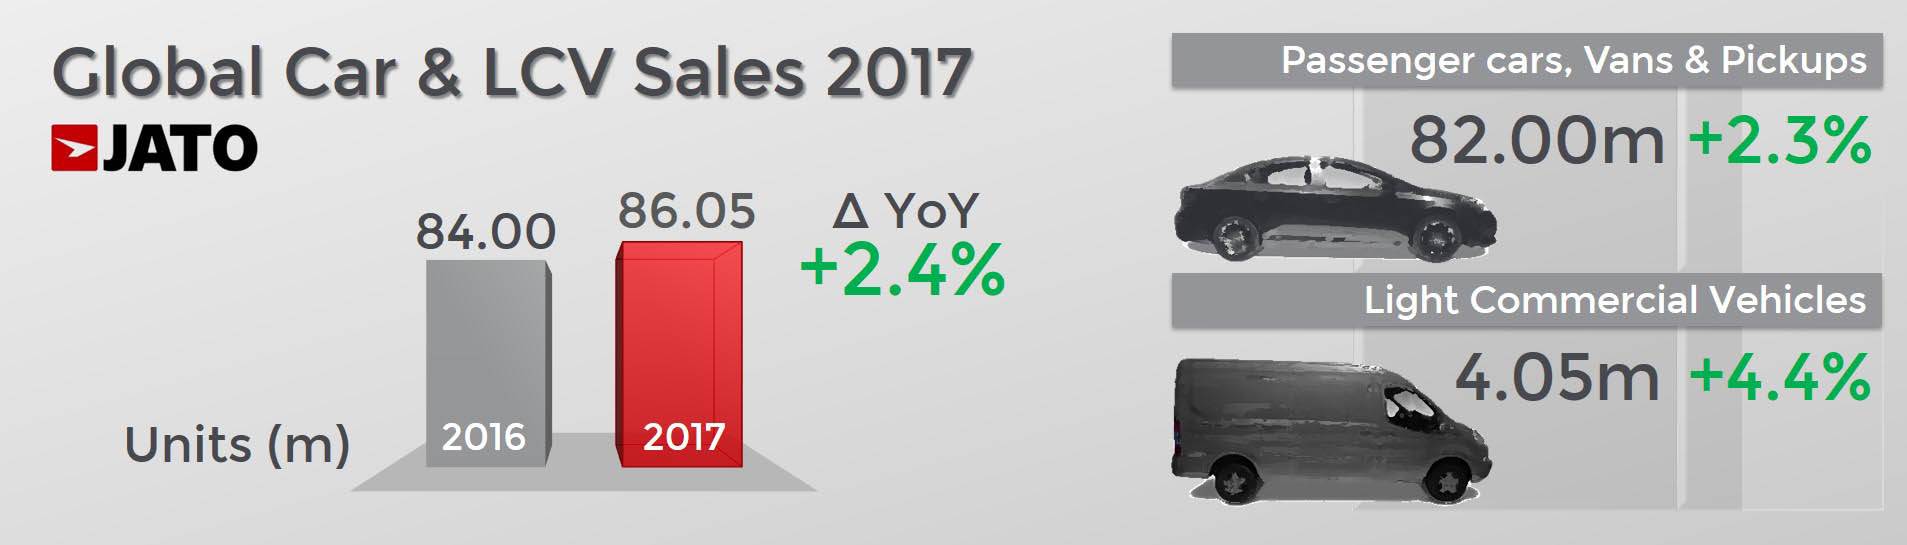 global-car-and-lcv-sales-2017